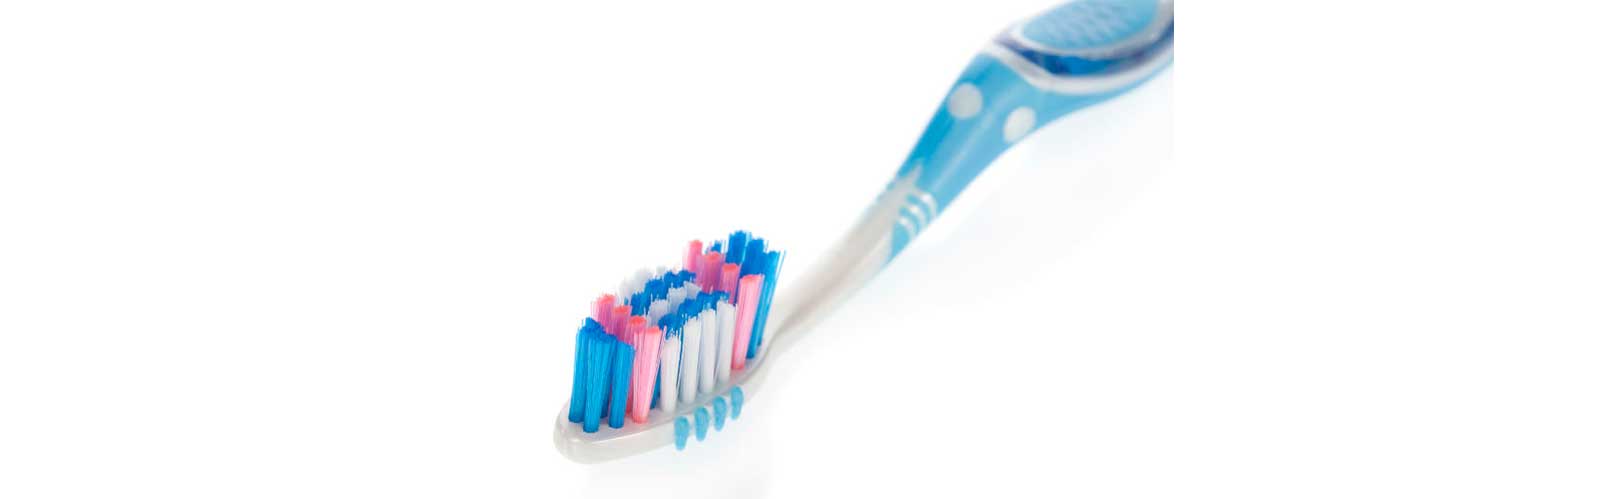 Cepillos de dientes imagen 3